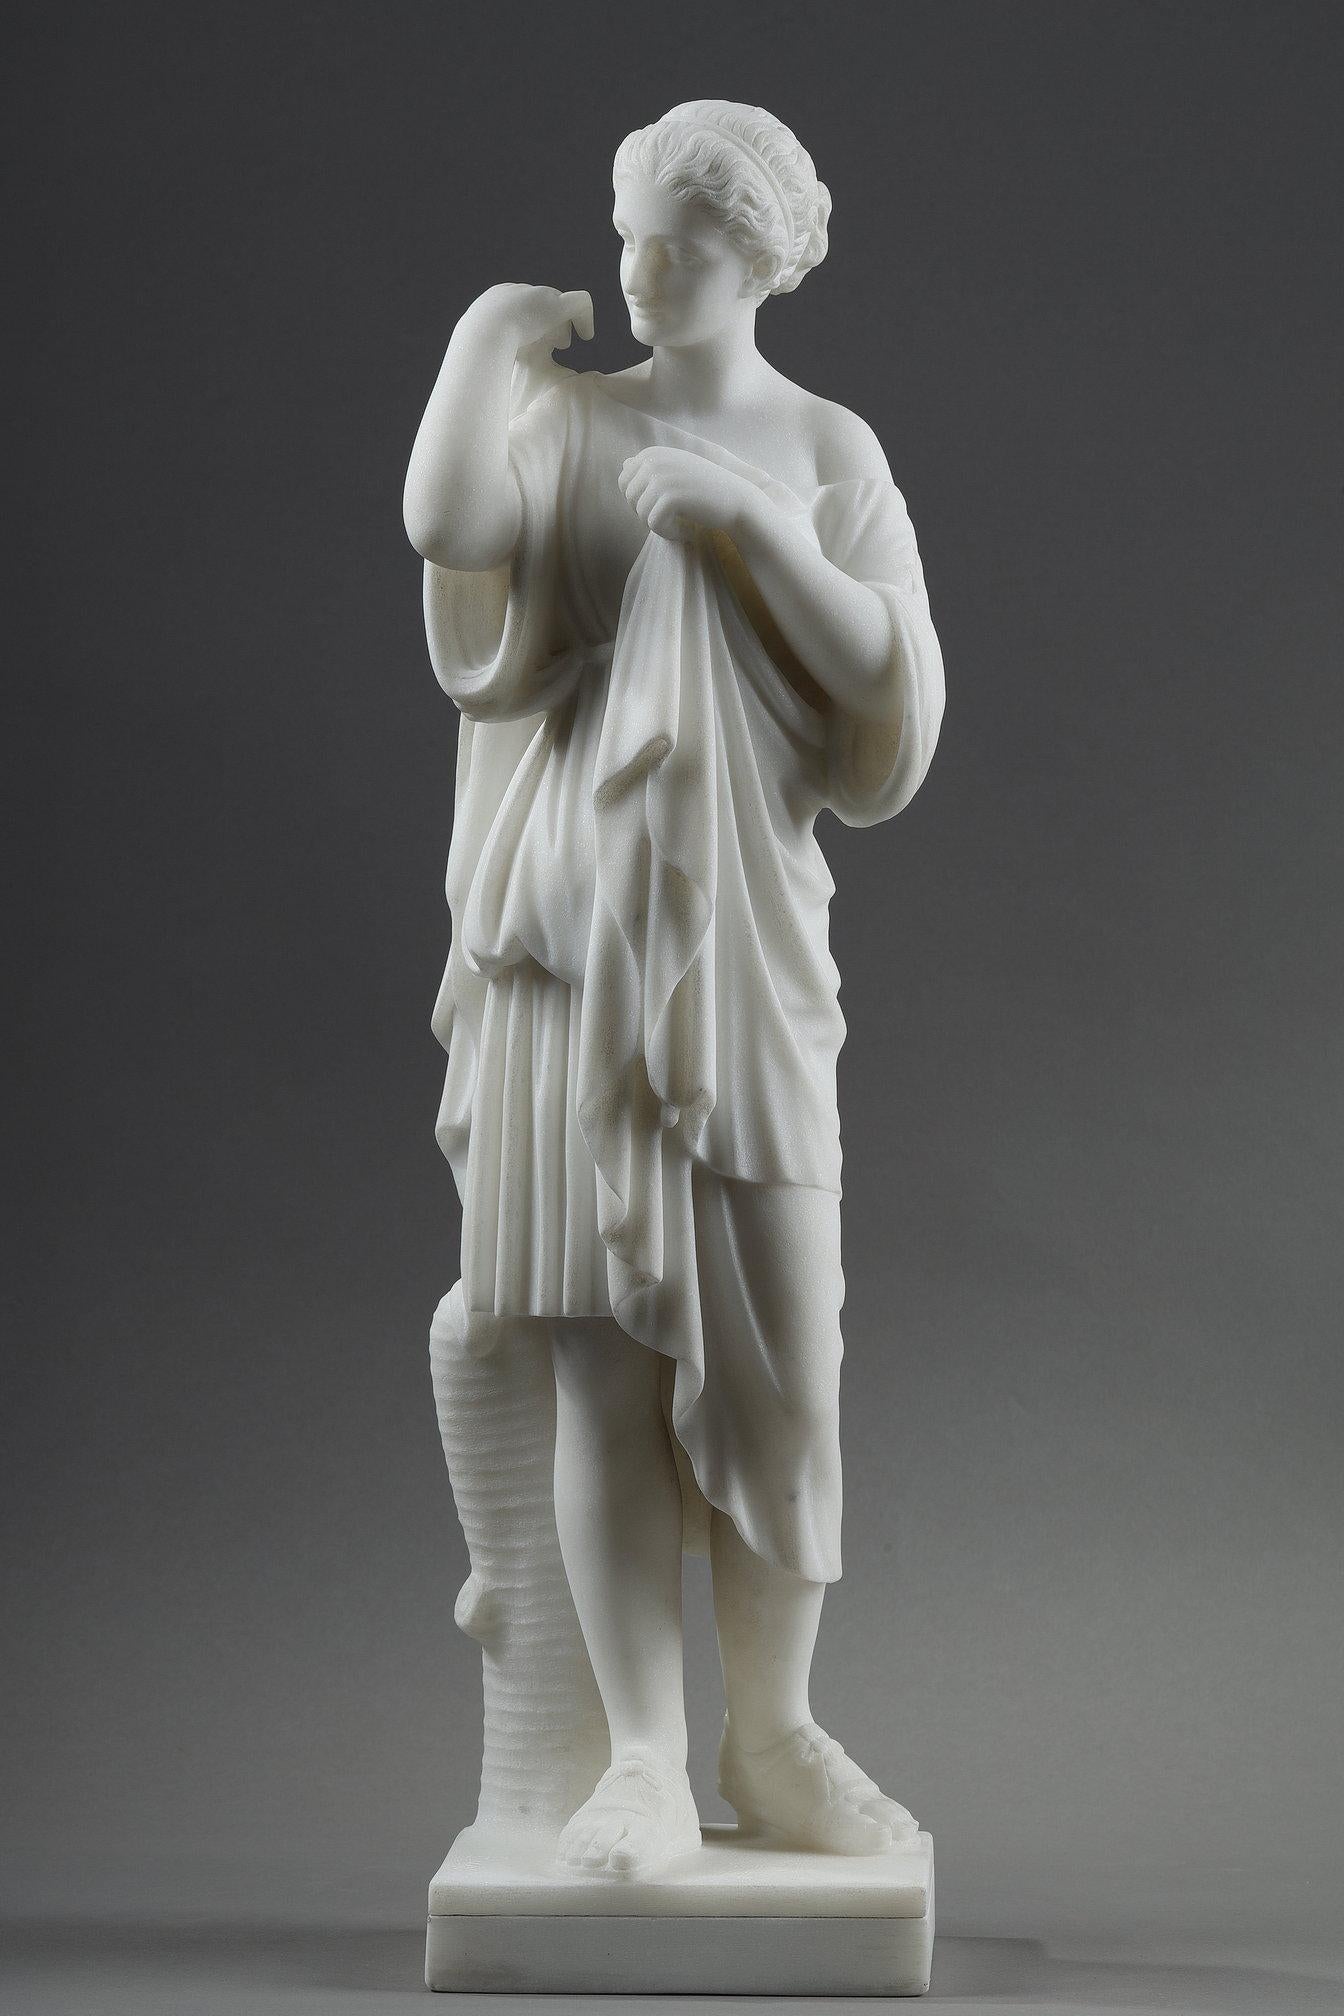 Marmorskulptur, die Artemis, die Göttin der Jagd, in einer kurzen Tunika und römischen Sandalen darstellt. Sie befestigt ihren Mantel mit einer Fibel über ihrer rechten Schulter.

Unsere signierte de Pugi-Skulptur ist eine Nachbildung der Artémis